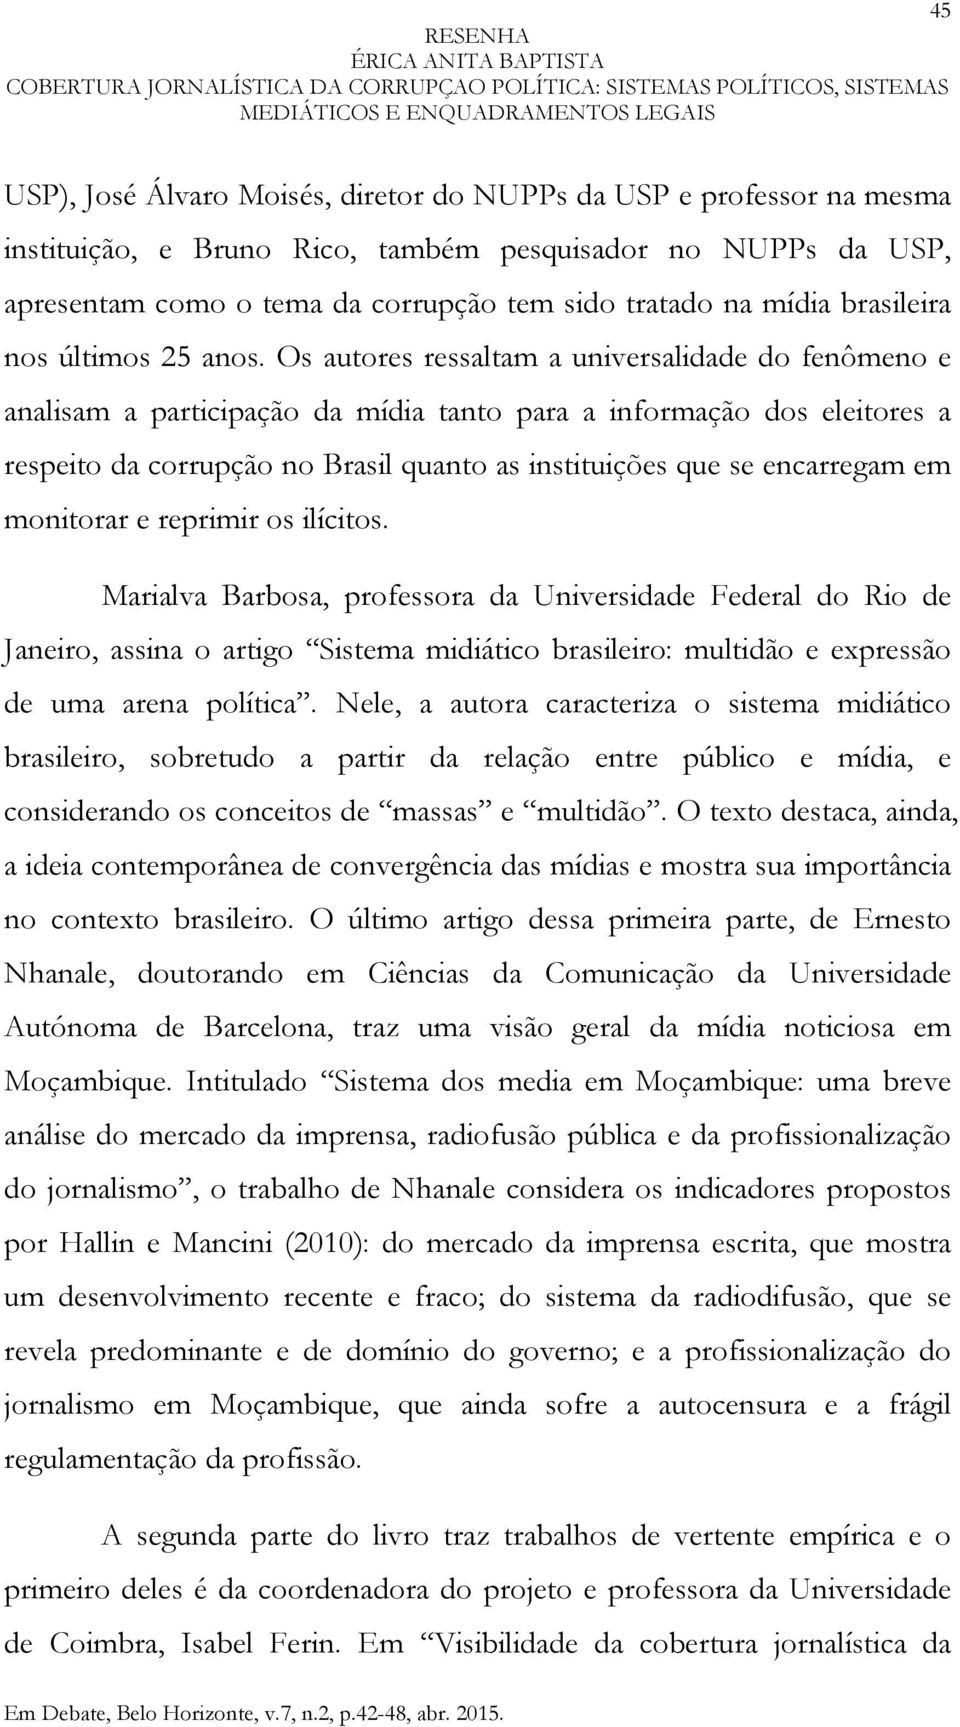 Os autores ressaltam a universalidade do fenômeno e analisam a participação da mídia tanto para a informação dos eleitores a respeito da corrupção no Brasil quanto as instituições que se encarregam